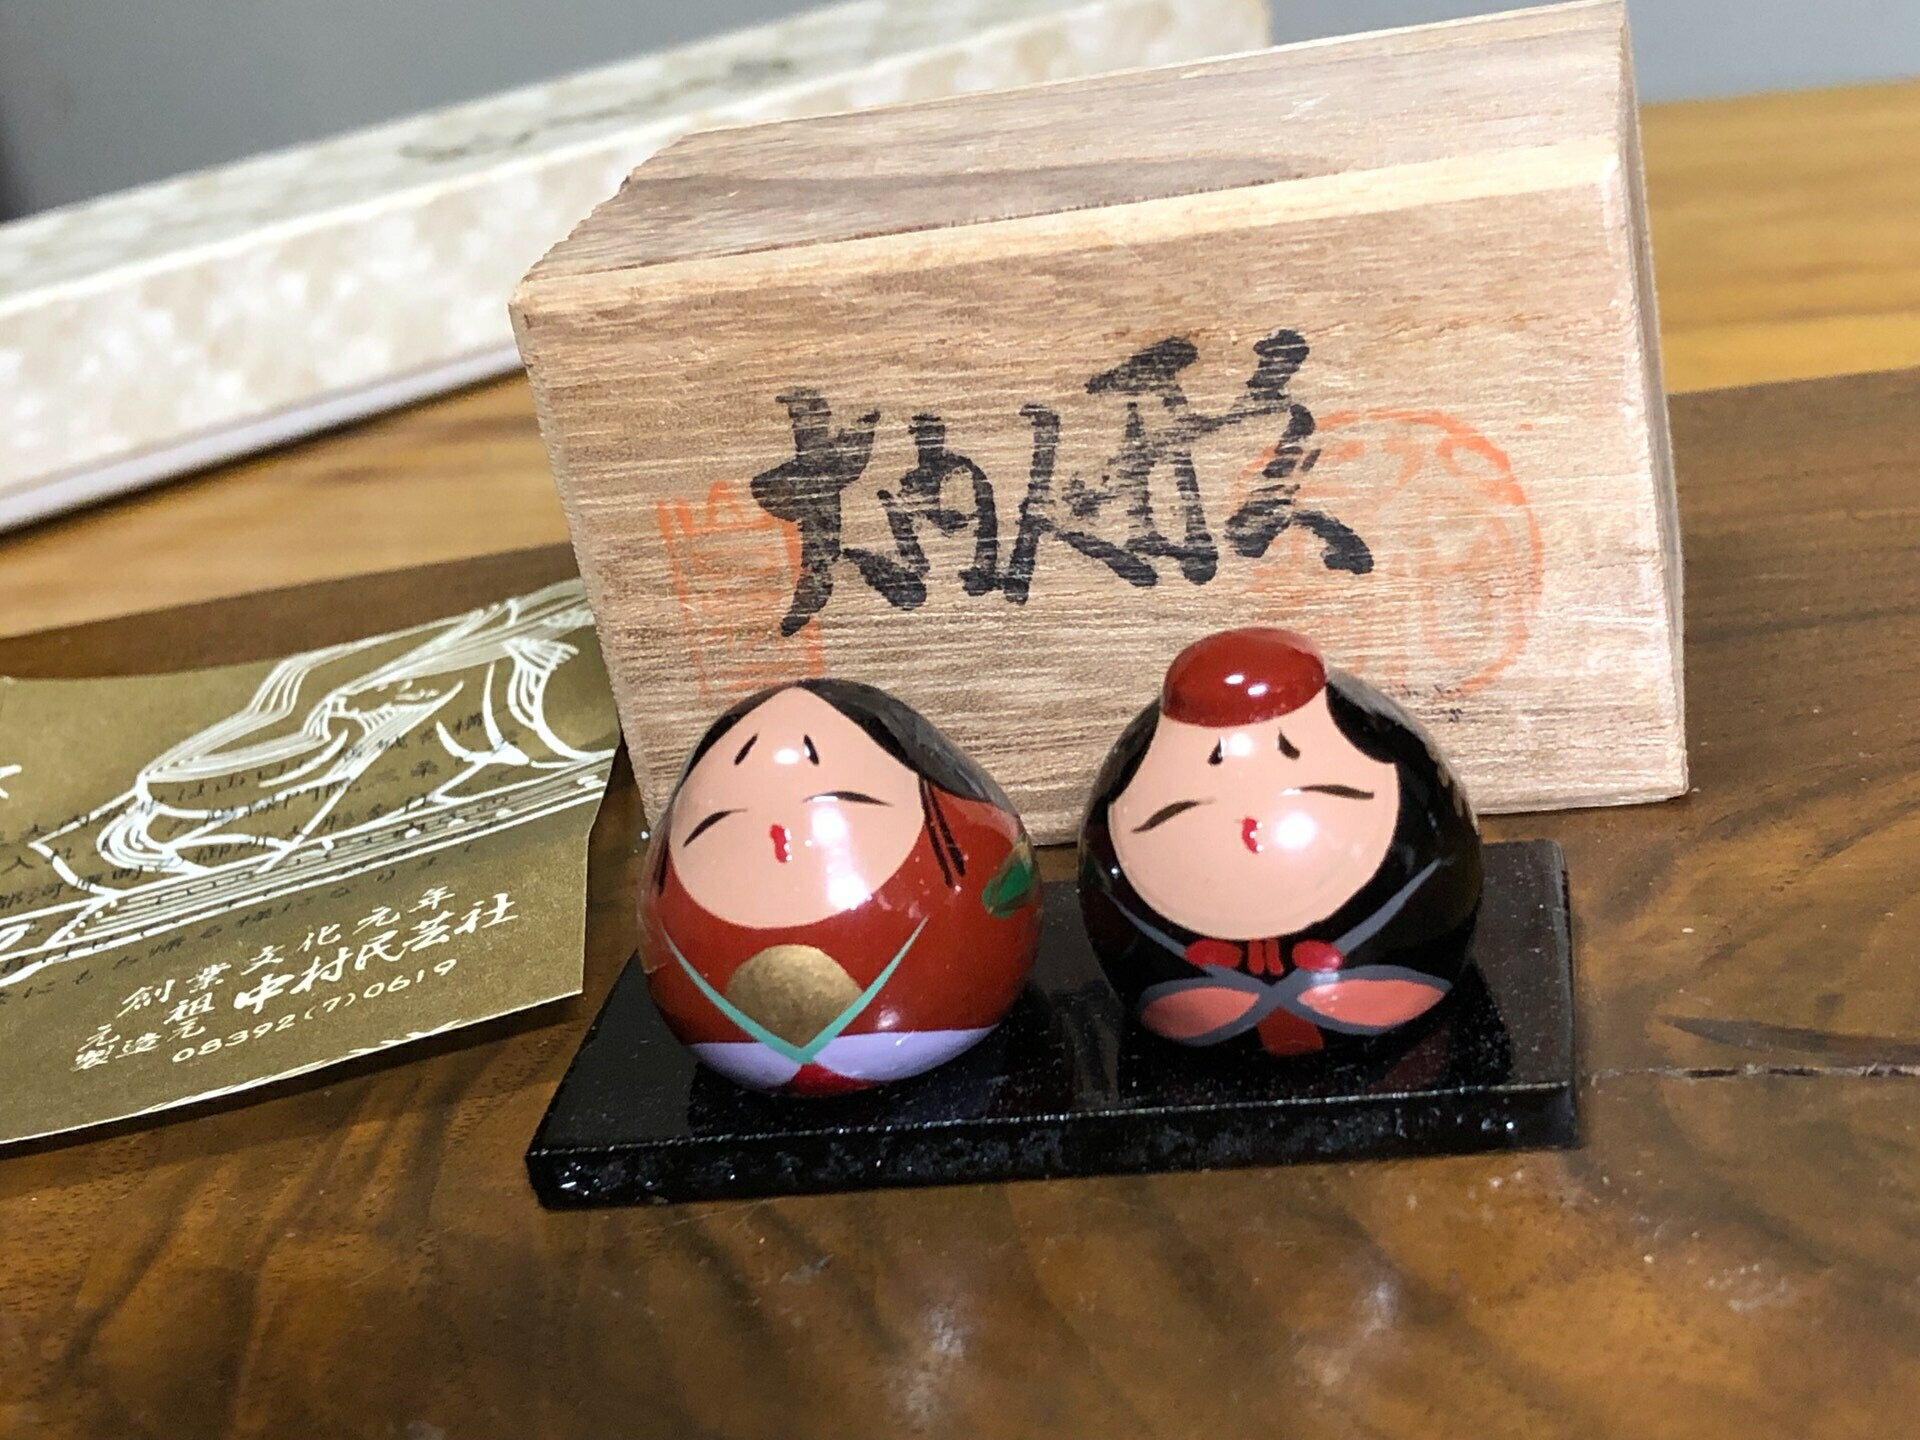 日本中古回流實木漆器手繪大內人形置物擺飾 茶寵 迷你娃娃玩偶